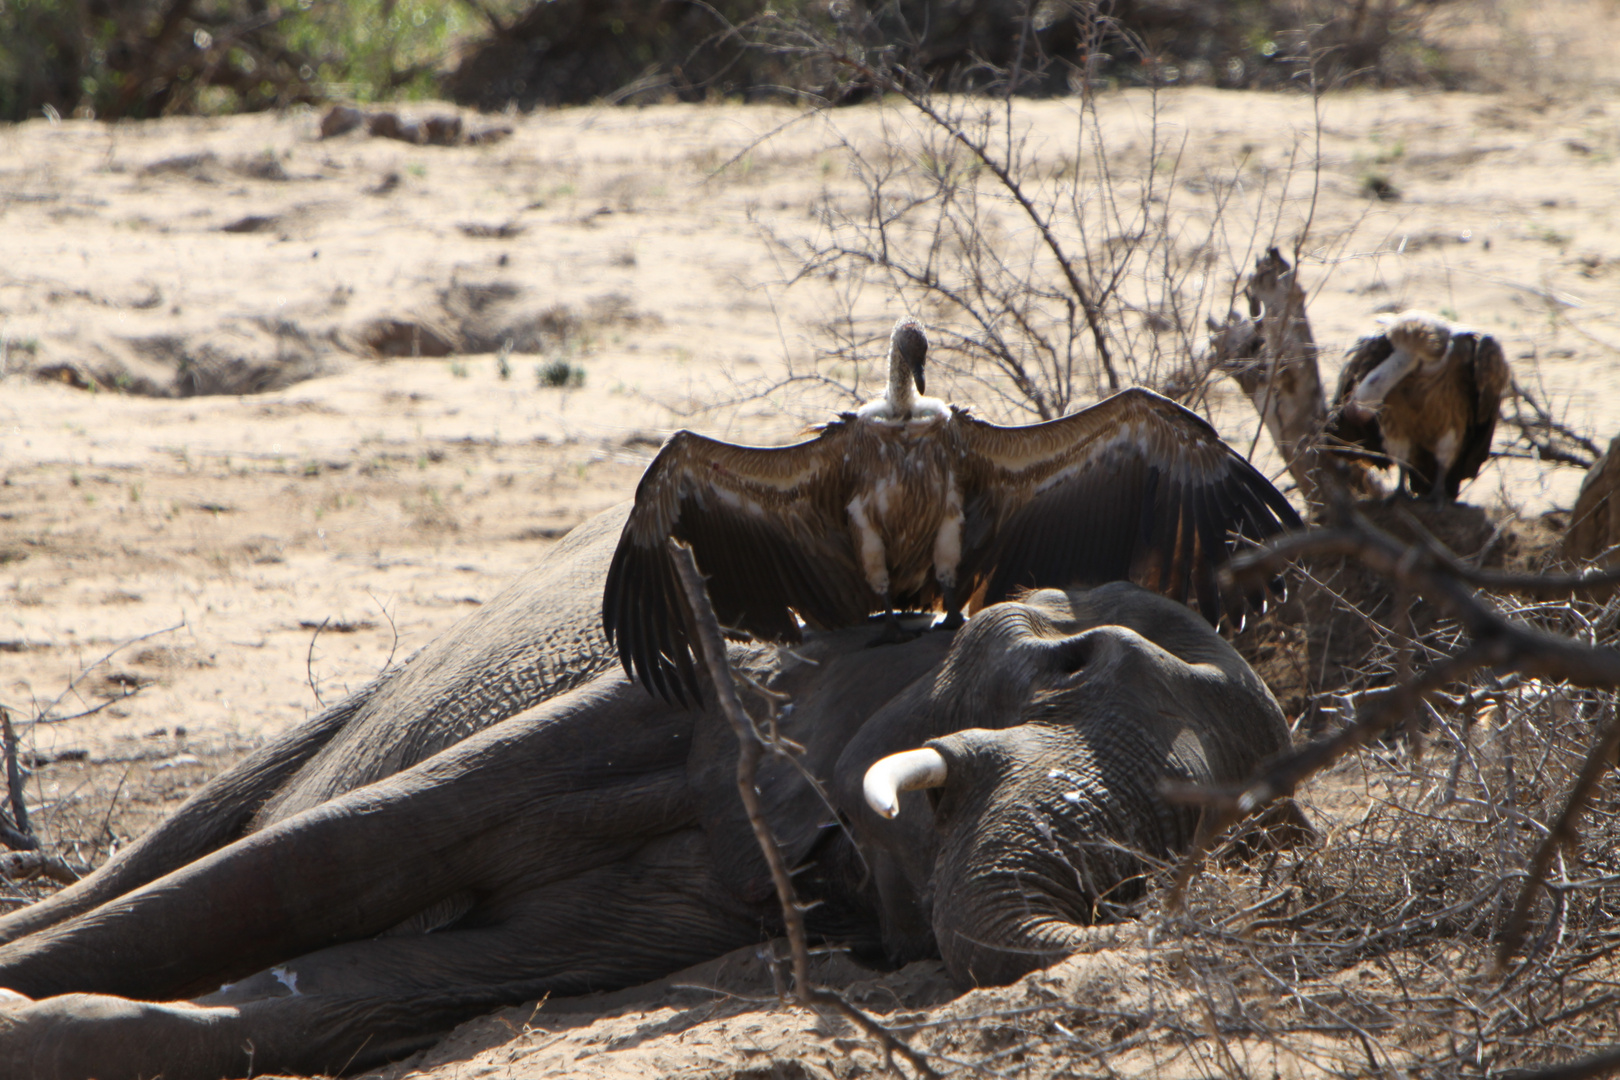 Südafrika Krüger Nationalpark: Nun ist der Elefant leider tot :-(